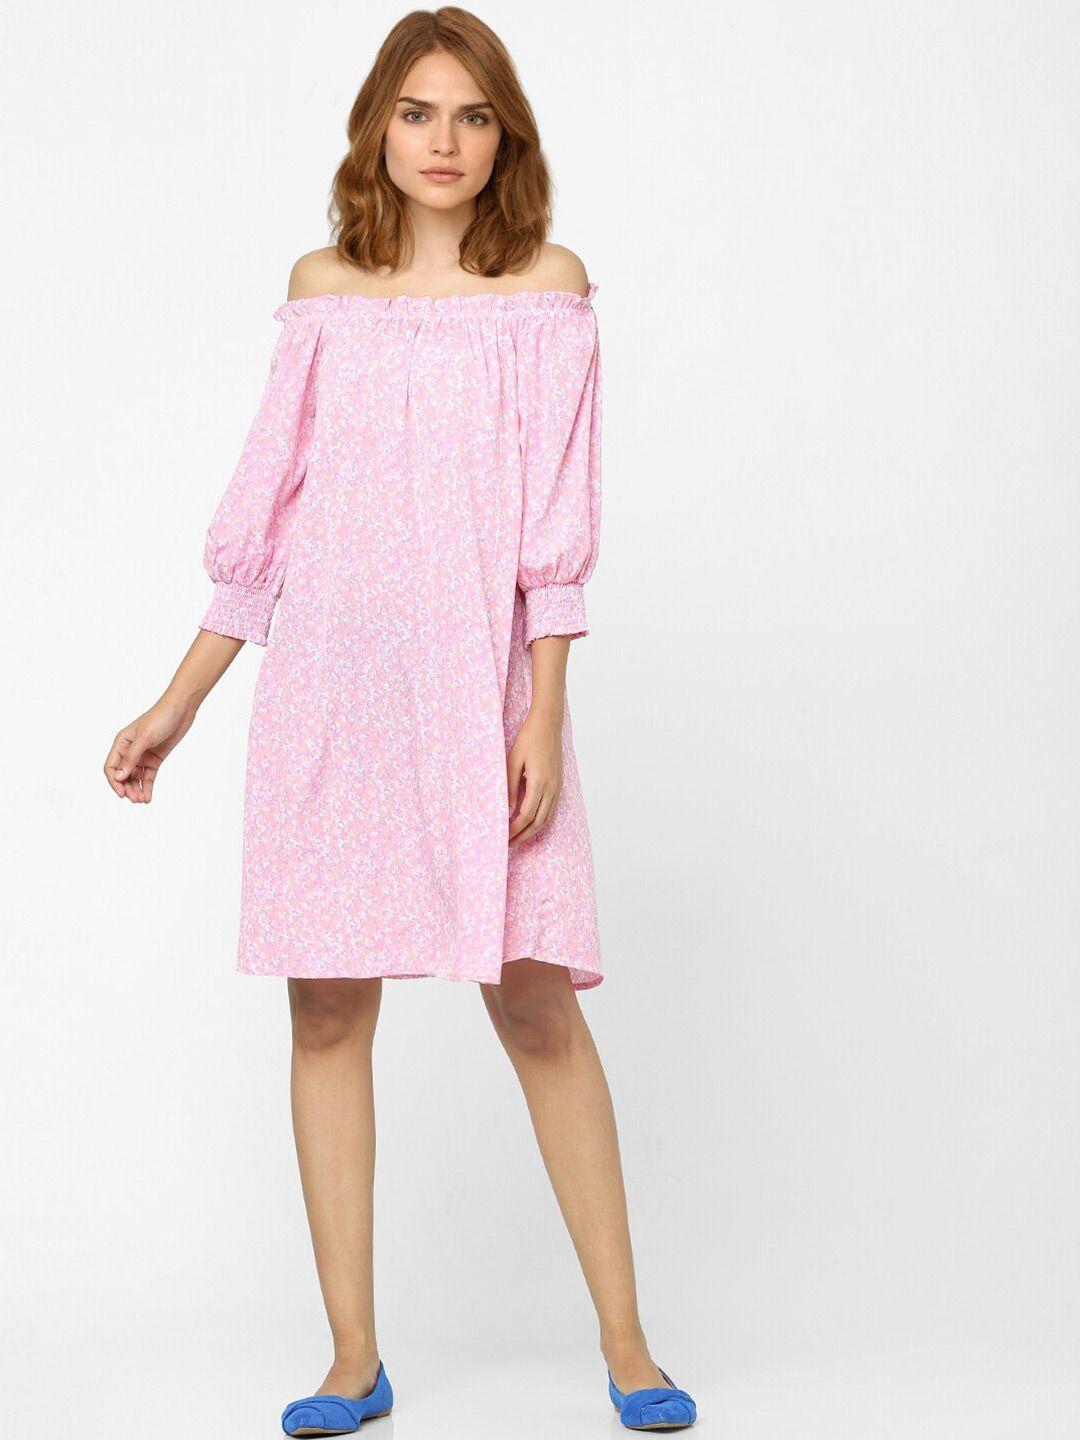 vero moda pink floral off-shoulder a-line dress